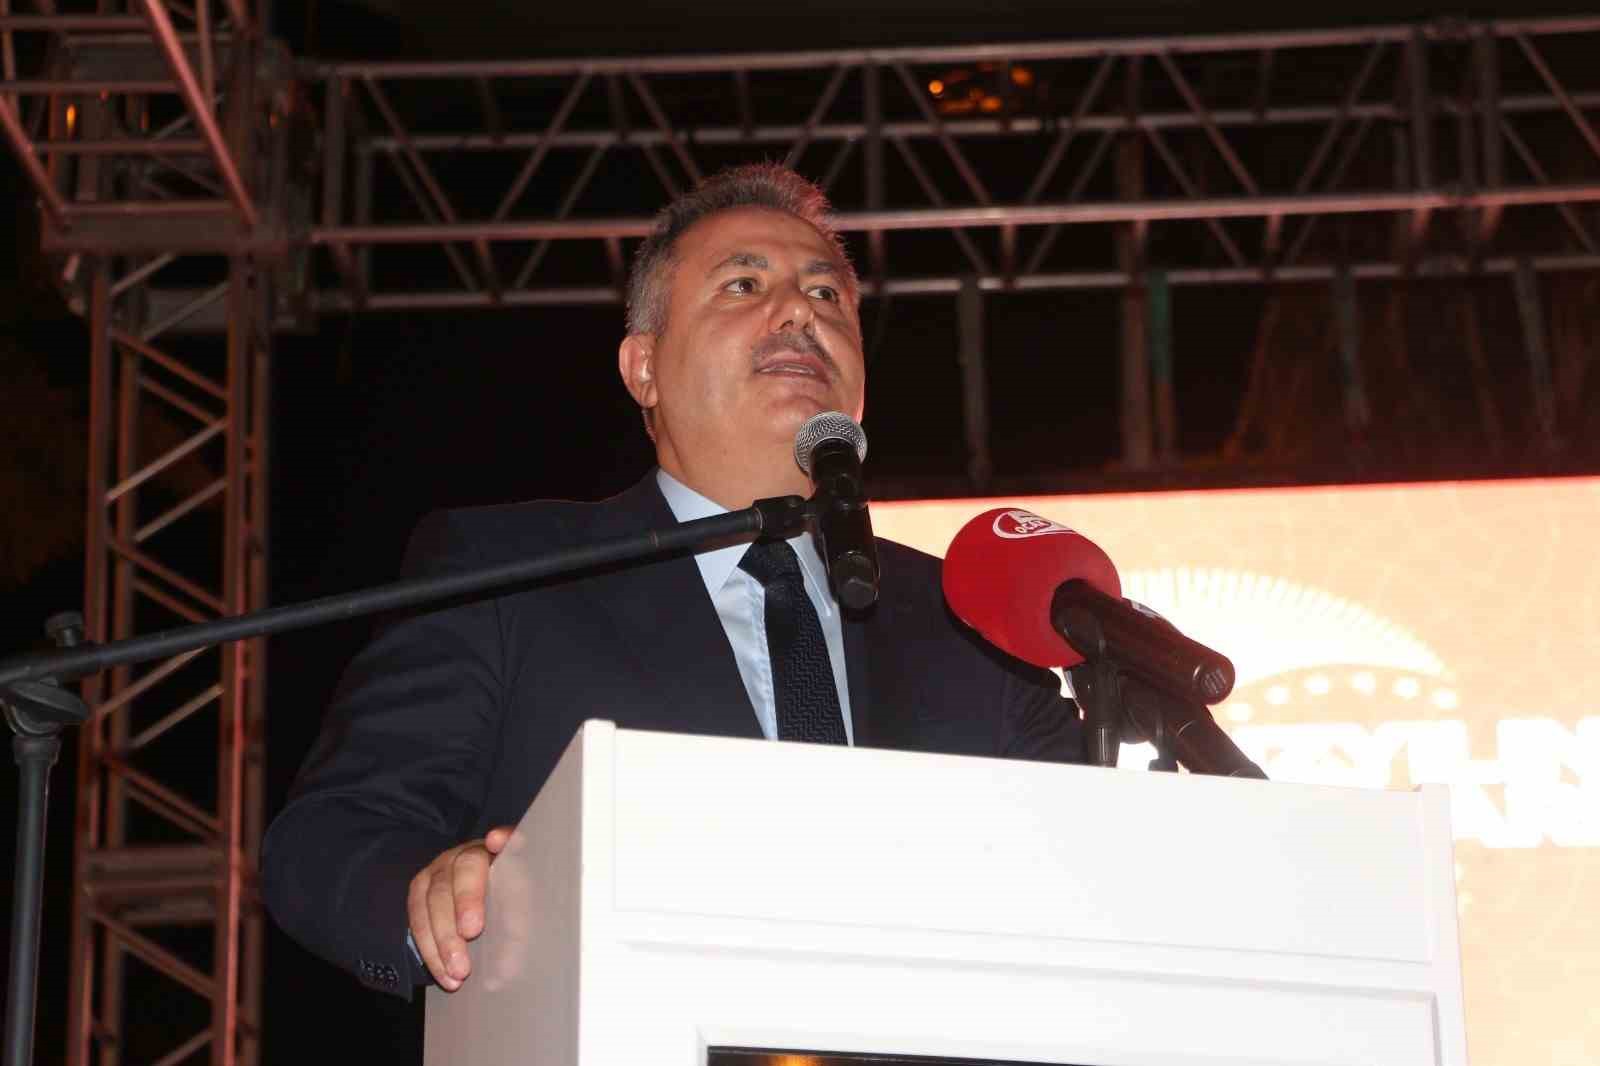 Adana’da ’Demokrasi ve Birlik Günü’ nöbeti tutuldu